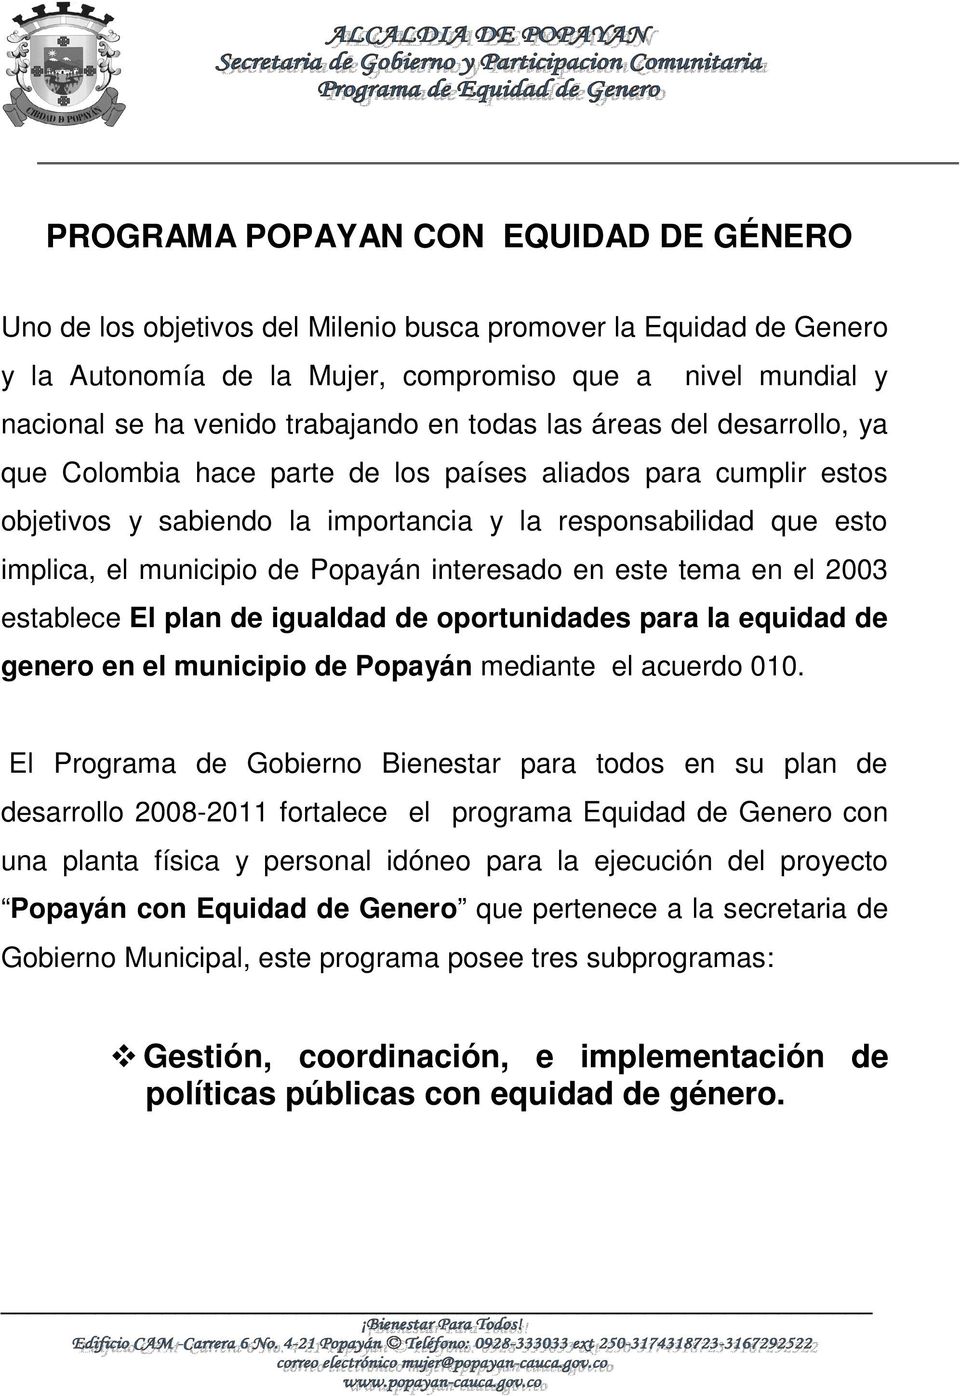 municipio de Popayán interesado en este tema en el 2003 establece El plan de igualdad de oportunidades para la equidad de genero en el municipio de Popayán mediante el acuerdo 010.